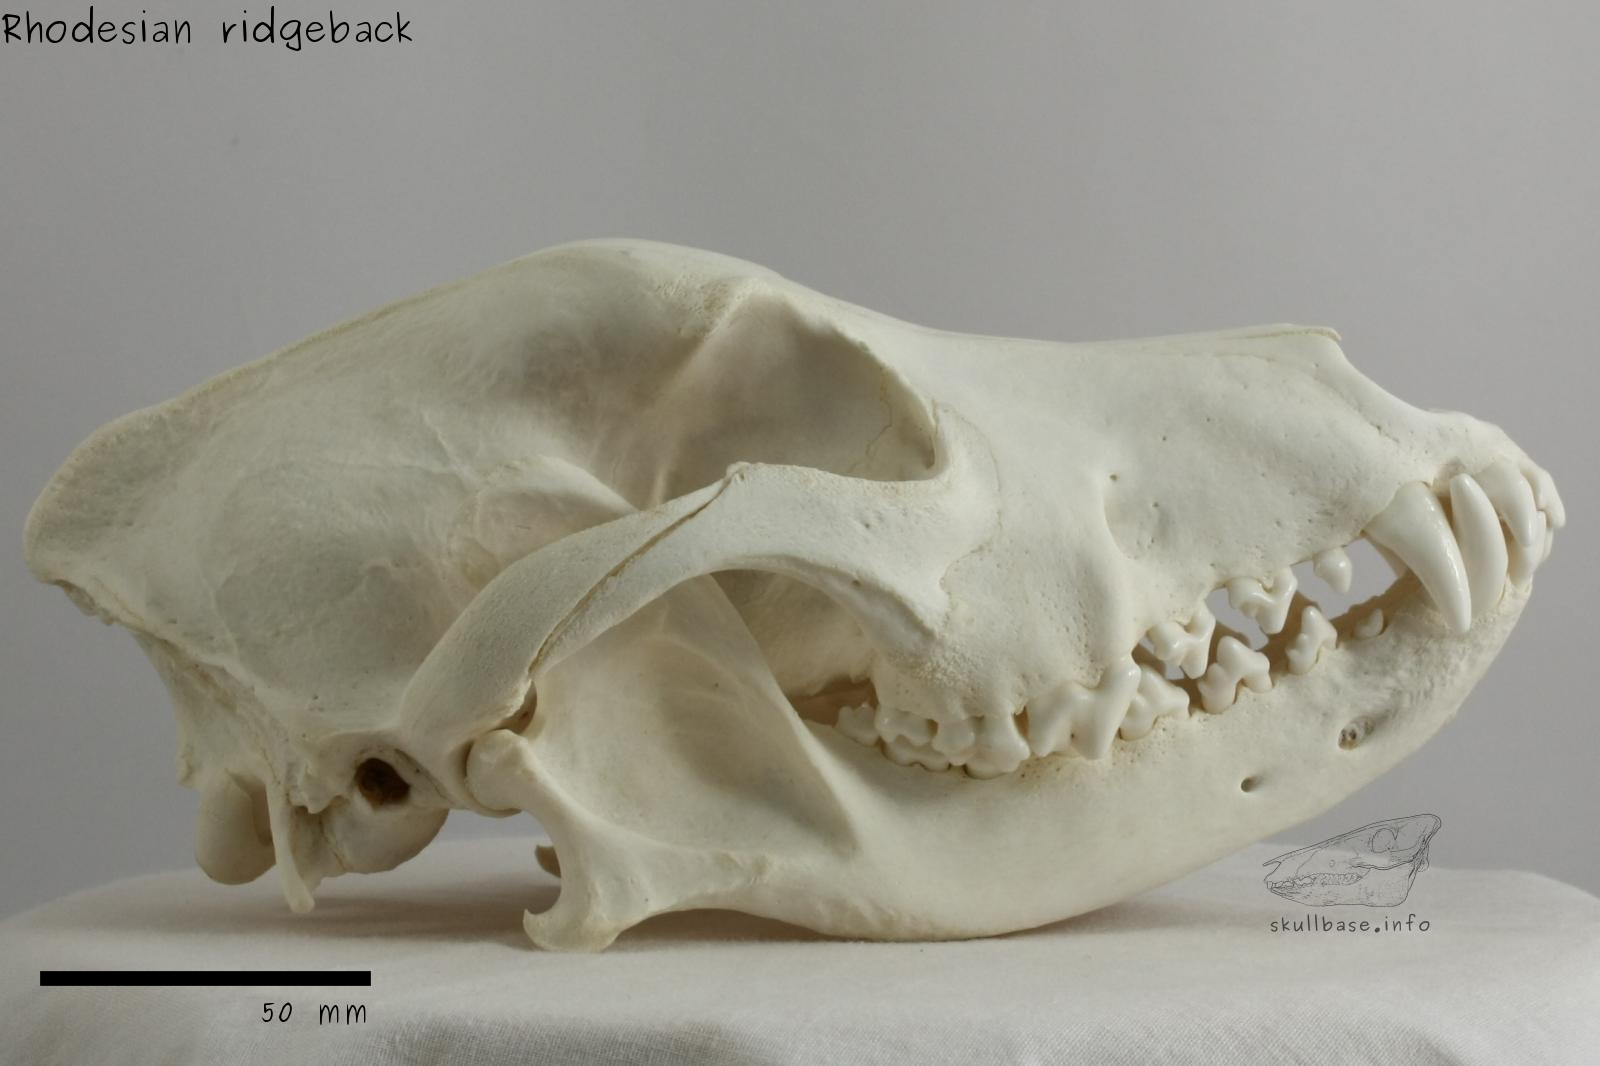 Rhodesian ridgeback (Canis lupus familiaris) skull lateral view